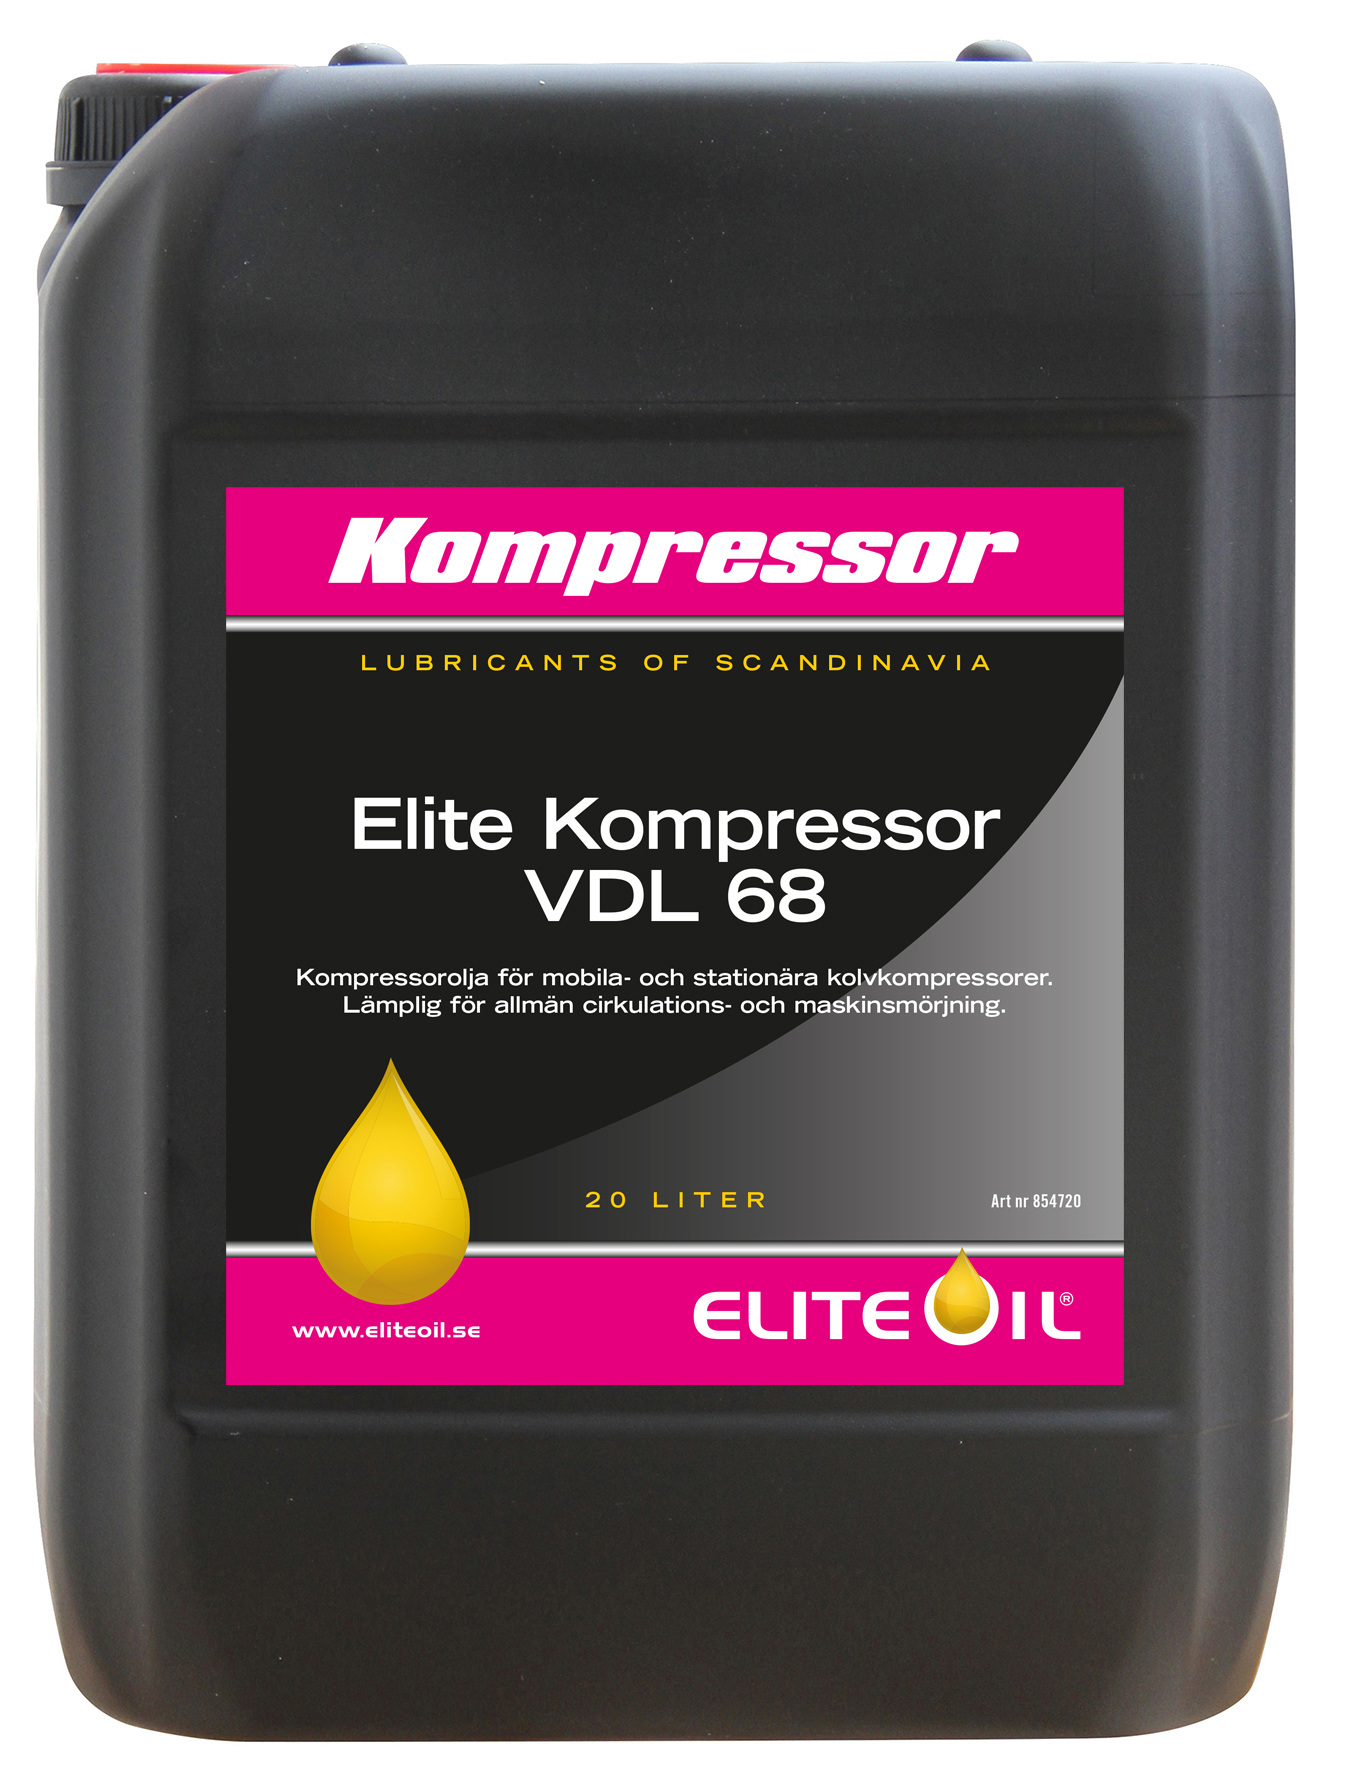 Elite Kompressor VDL 68, 20 liter dunk-image